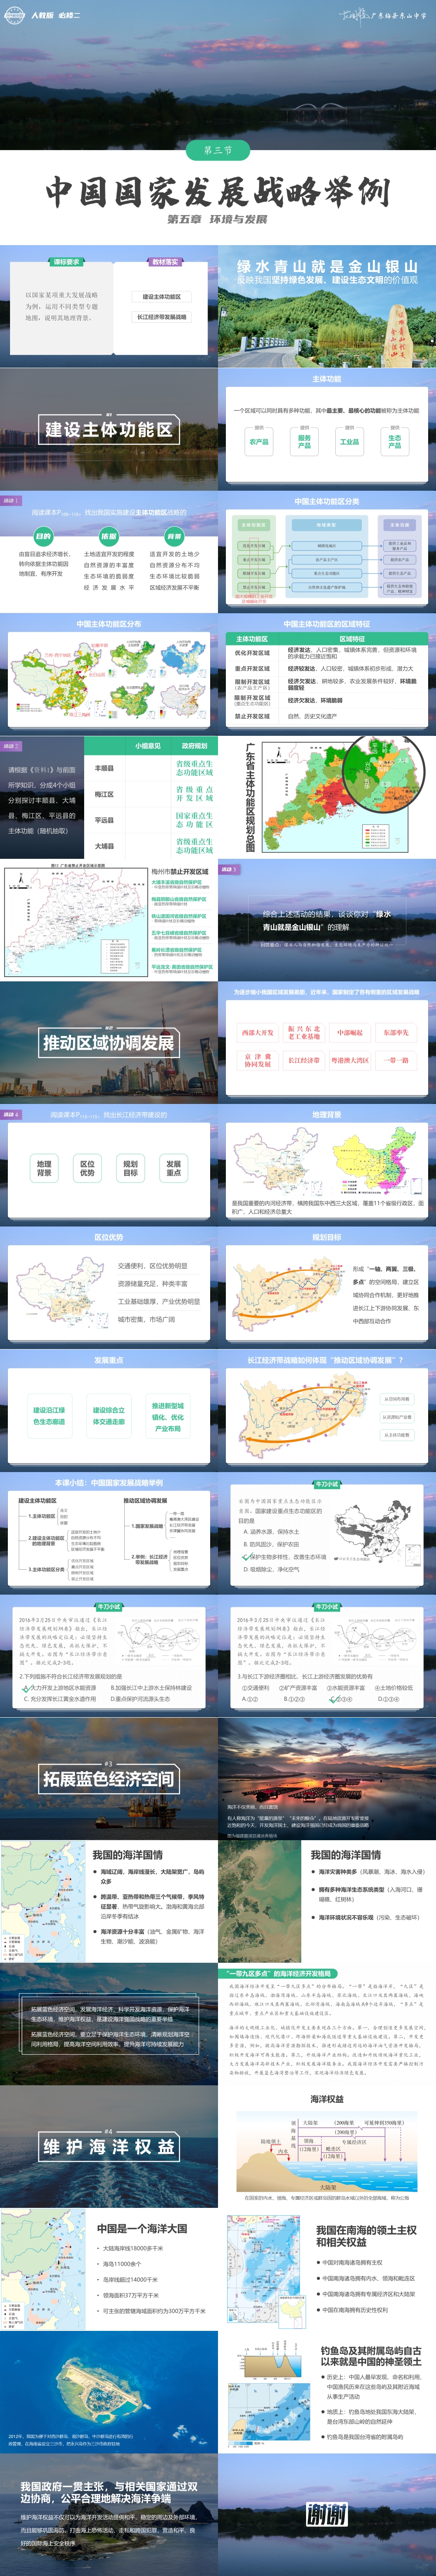 N2.5.3.中国国家发展战略举例.jpg